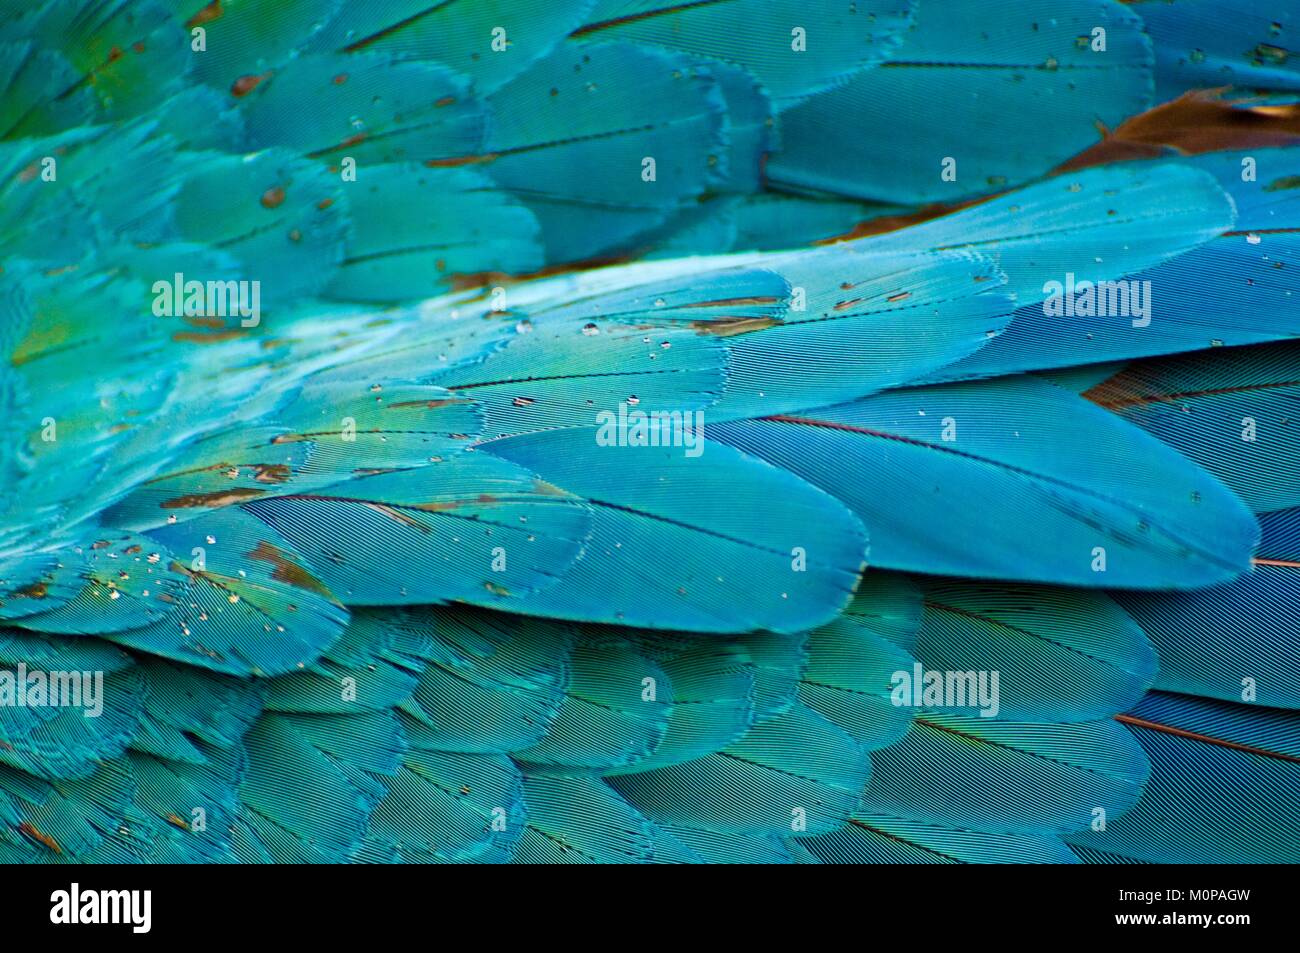 Francia,Guadalupe,Basse-Terre,Deshaies,jardín botánico y animal, detalle de un ala de Ara azul (Ara ararauna) Foto de stock